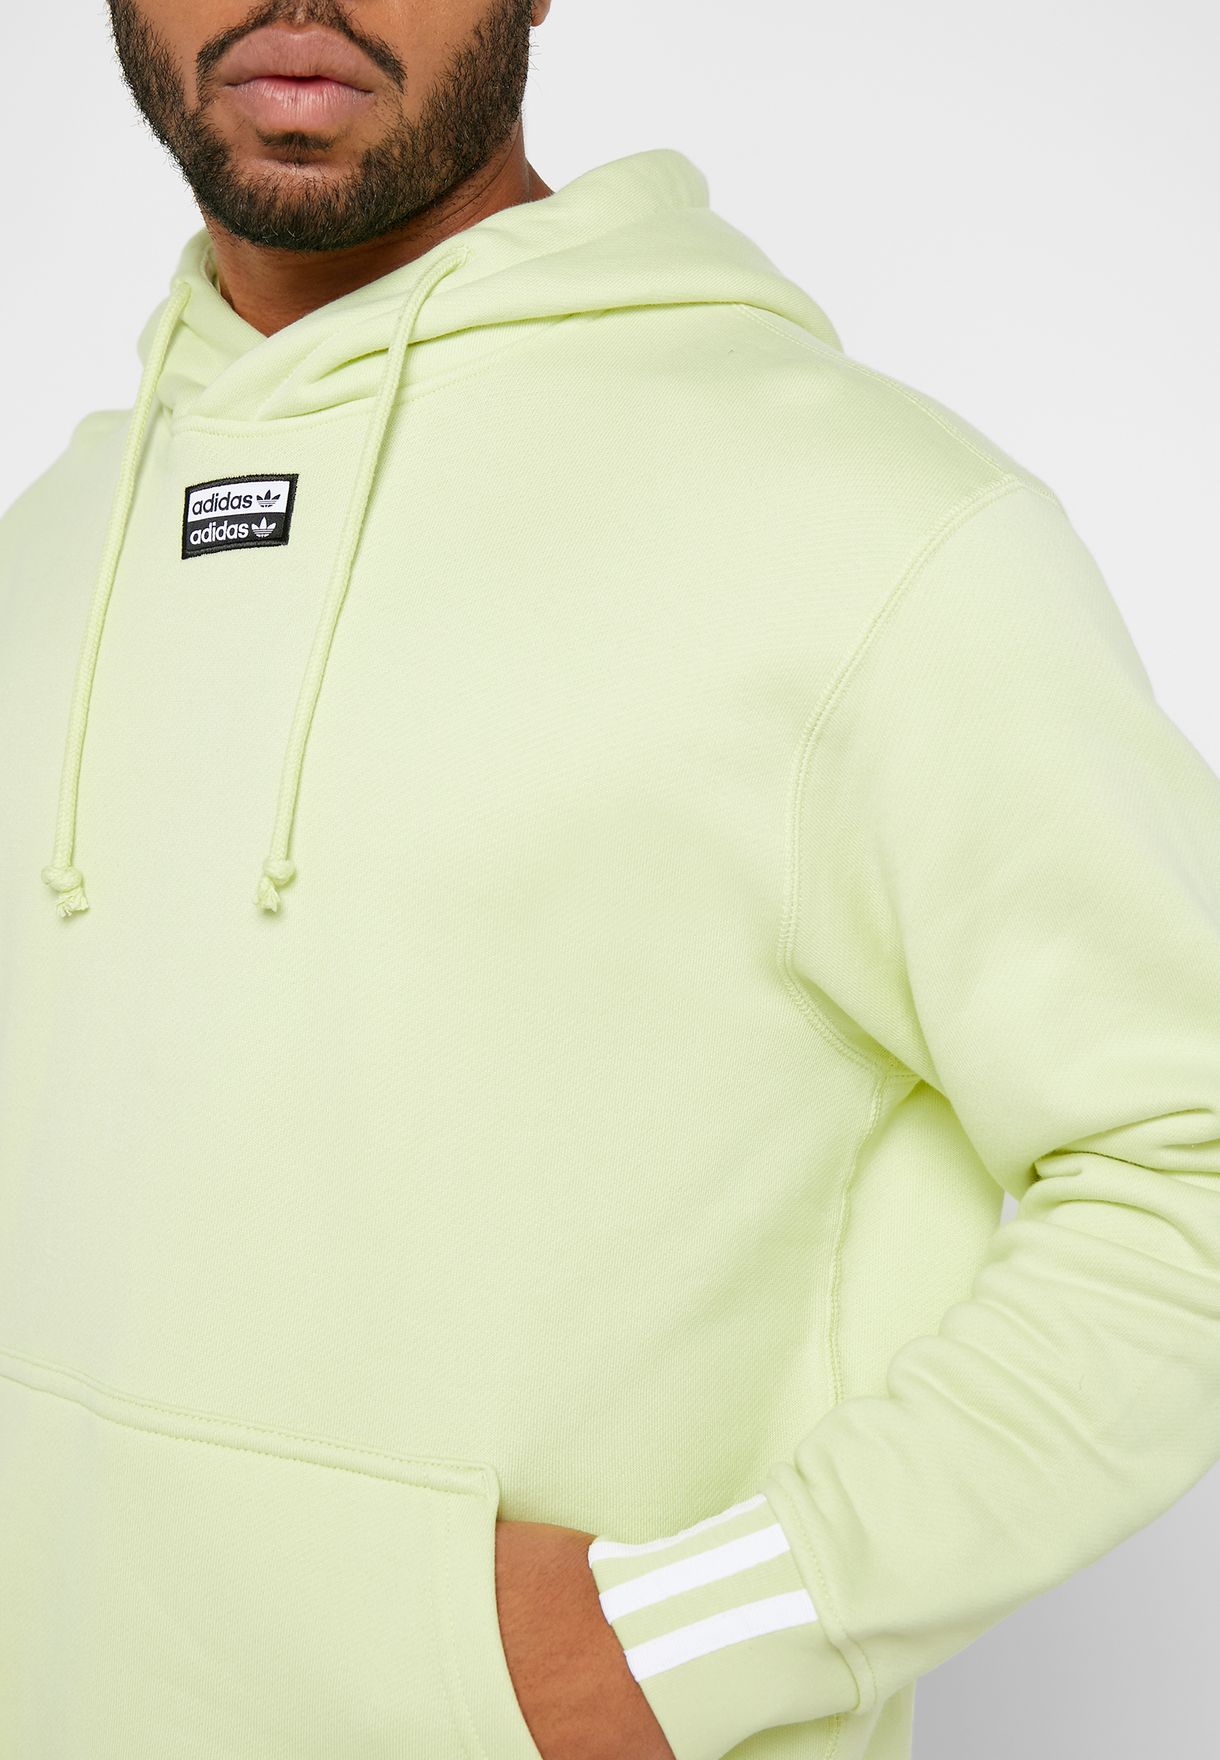 adidas originals ryv hoodie in green